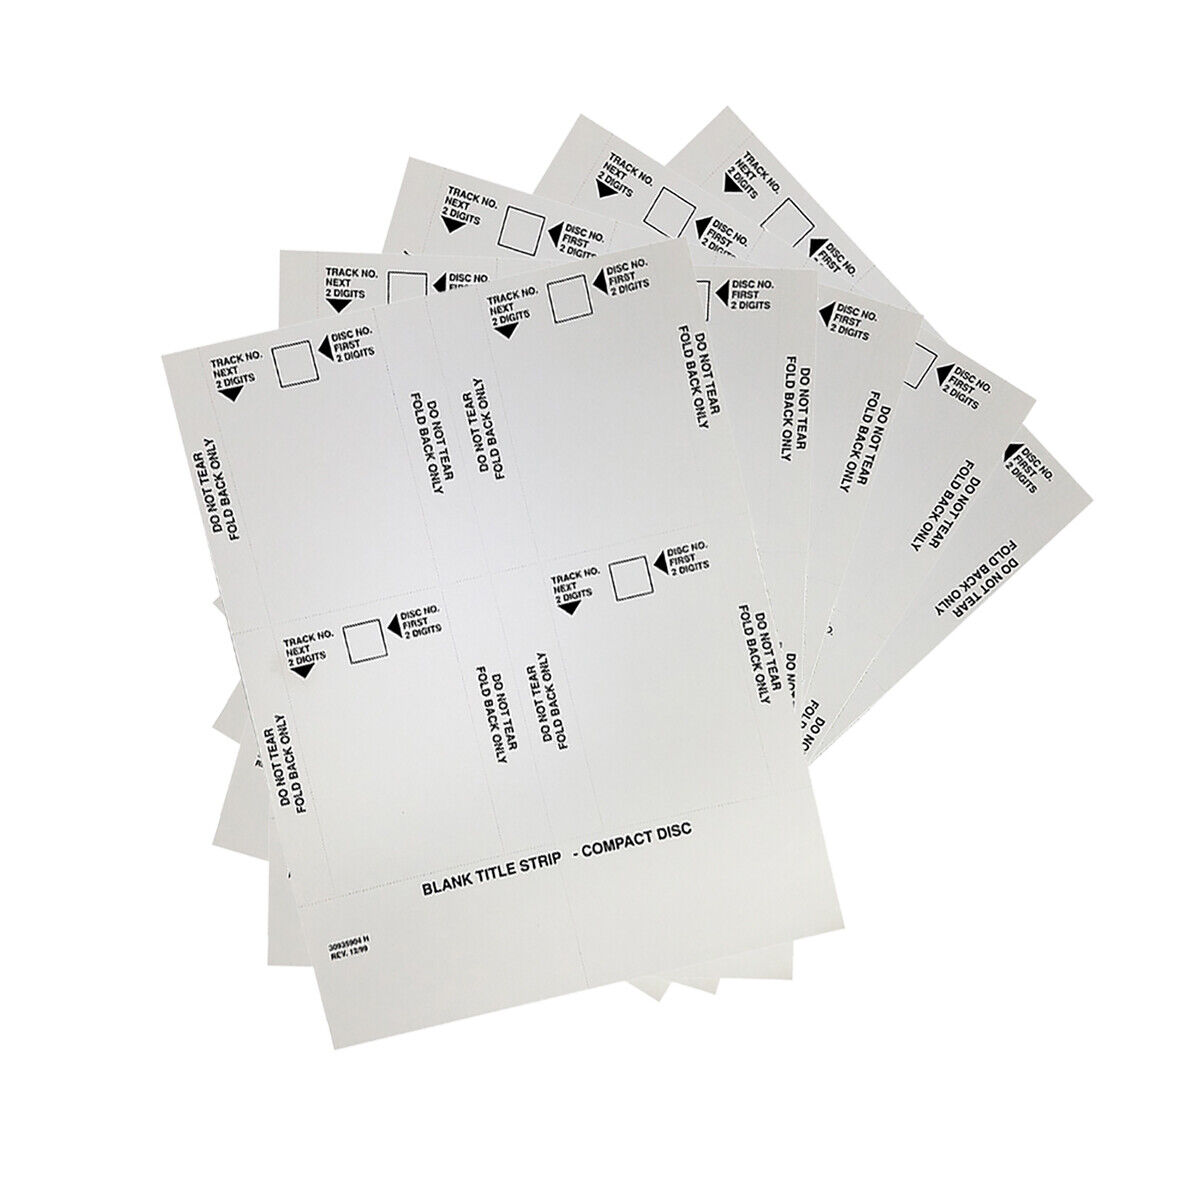 AMI Package of 5 Blank Title Strip Rowe Jukebox Cards